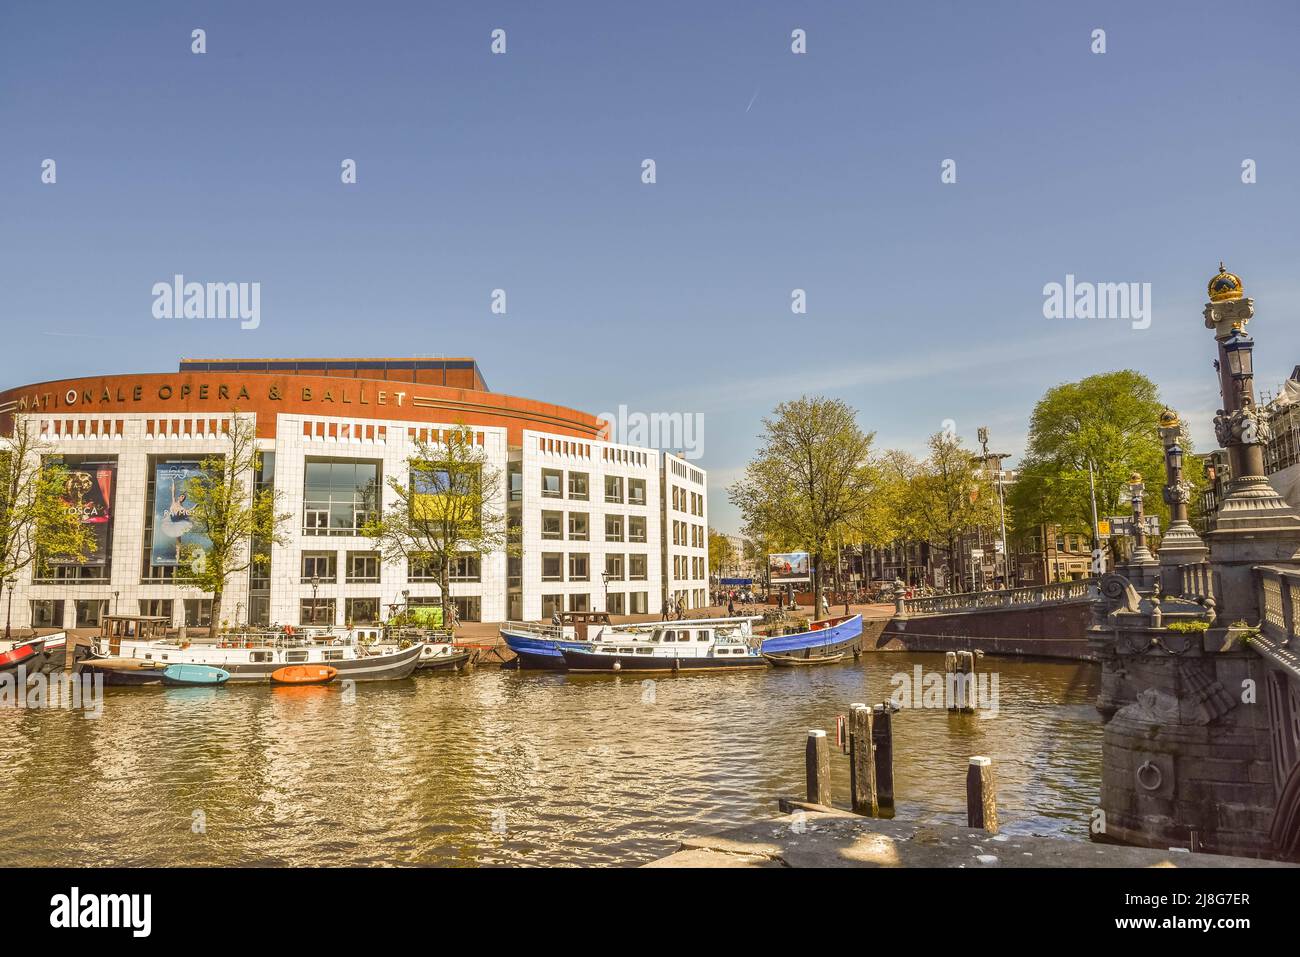 Ámsterdam, Países Bajos, mayo de 2022. La casa nacional de ballet y ópera y el puente azul de Ámsterdam. Fotografías de alta calidad Foto de stock